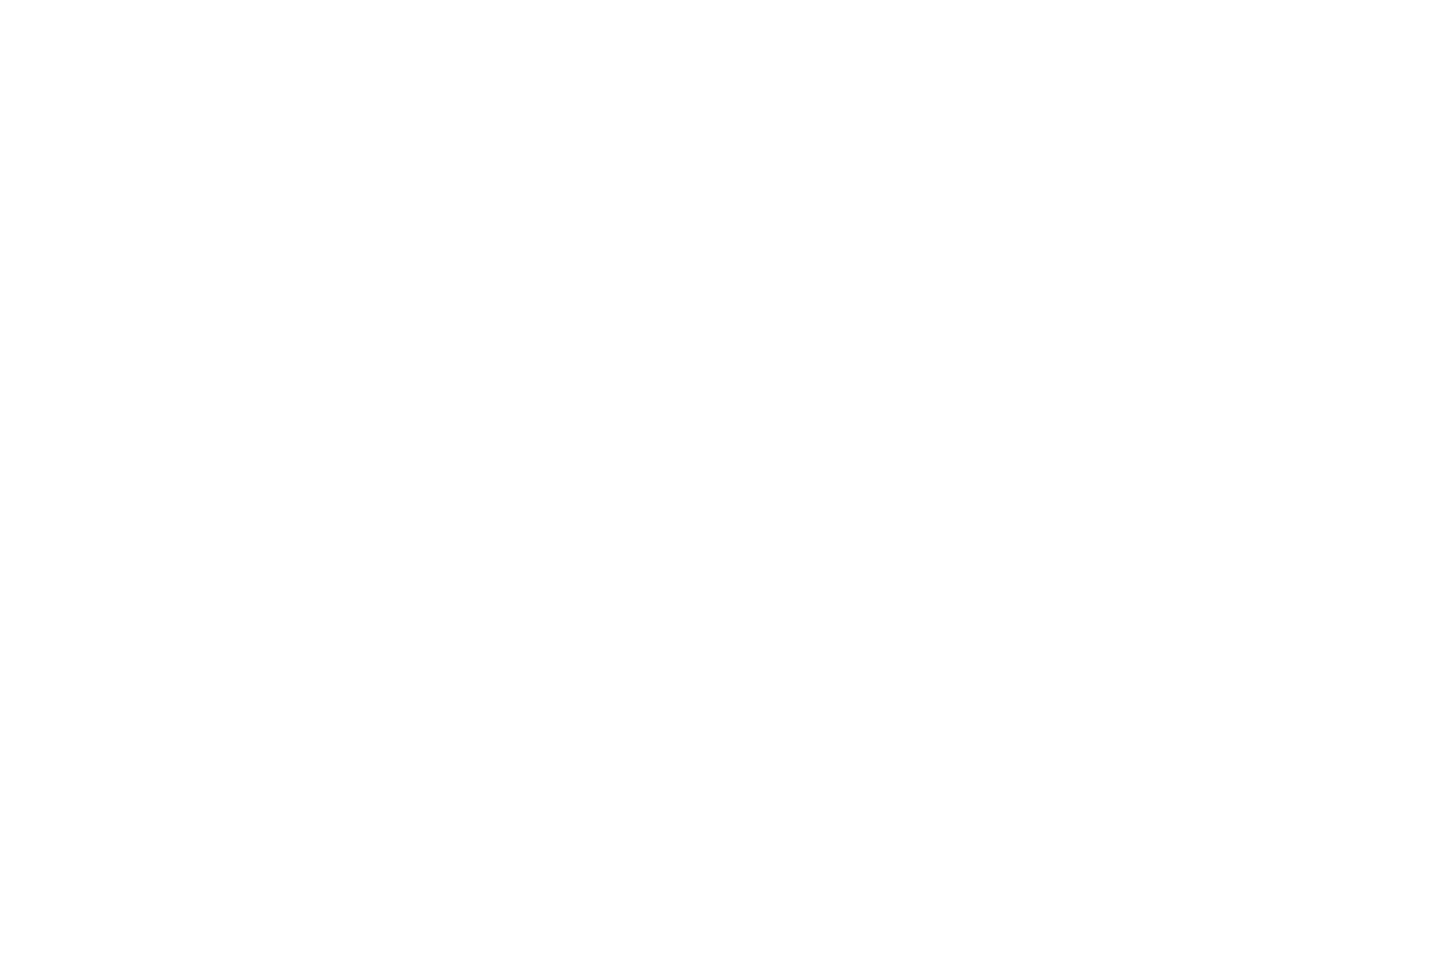 LemonWares